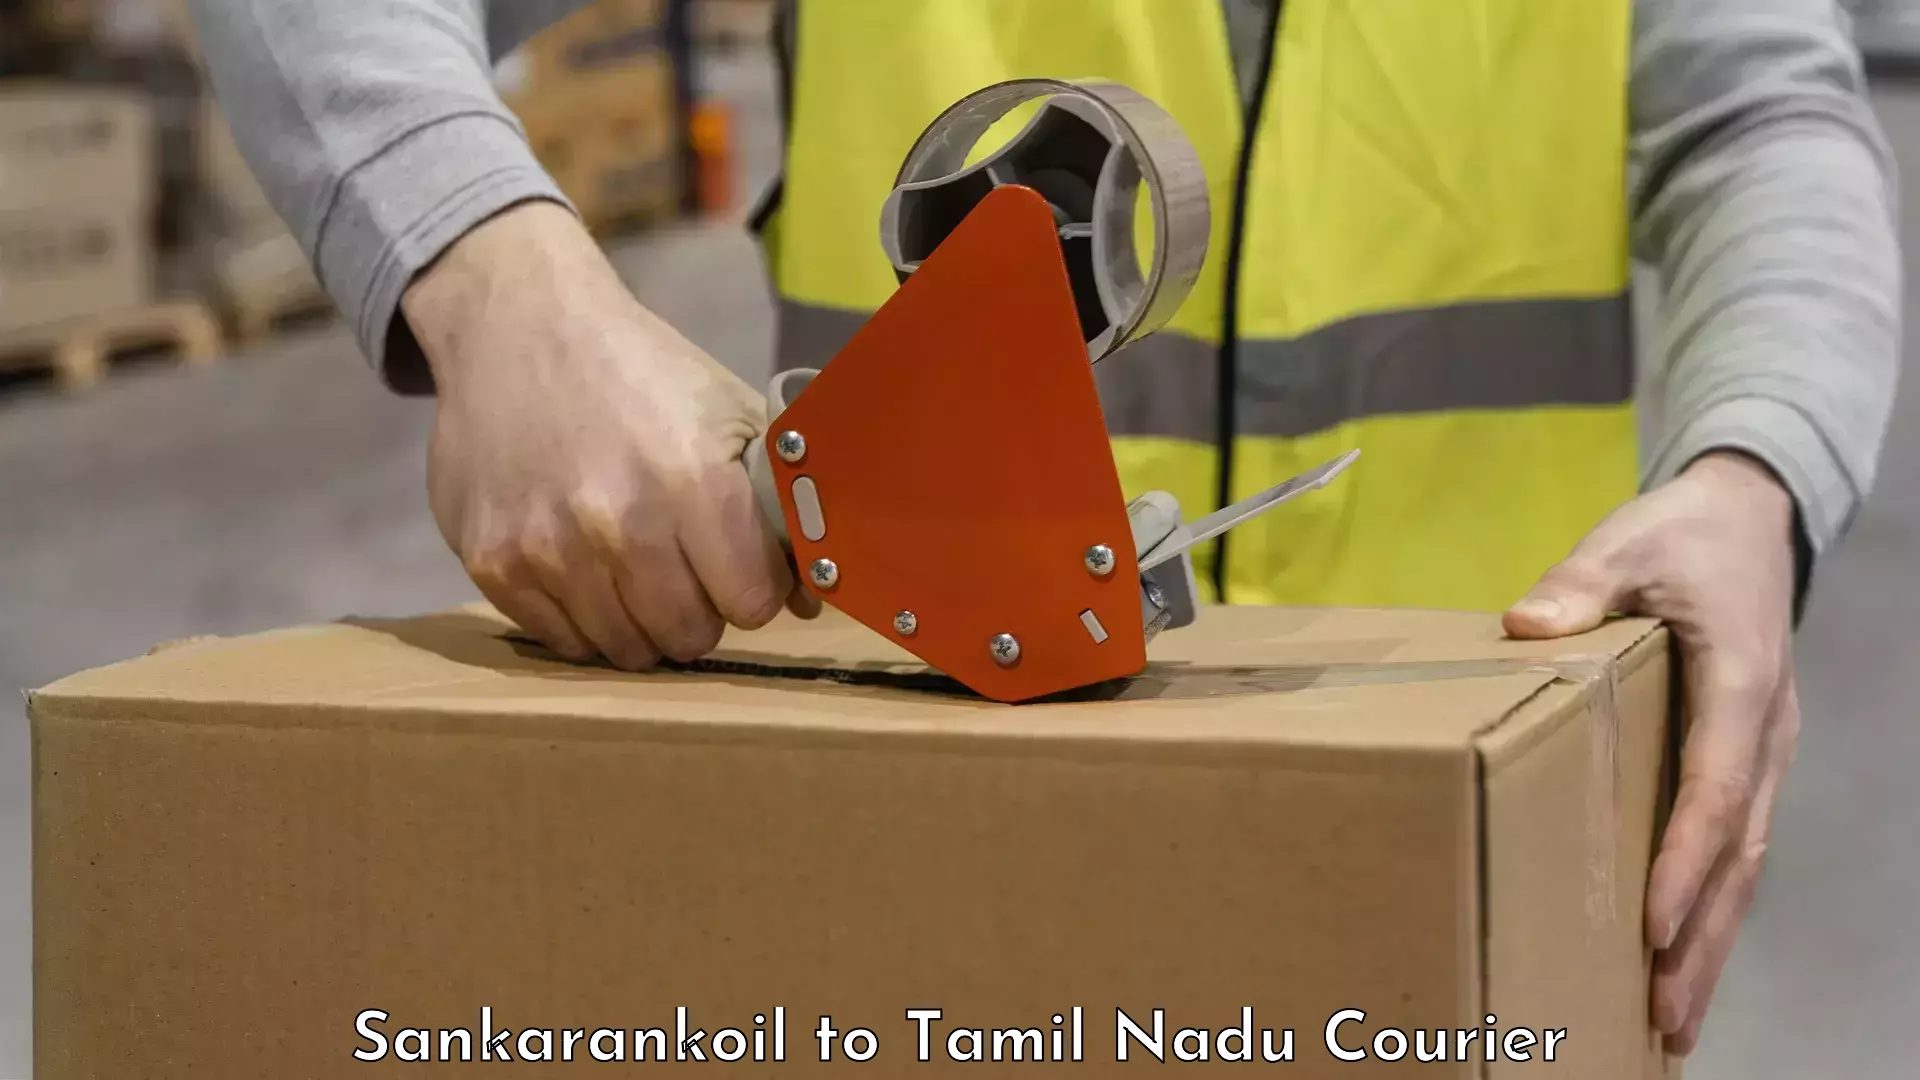 Luggage transport solutions Sankarankoil to Tamil Nadu